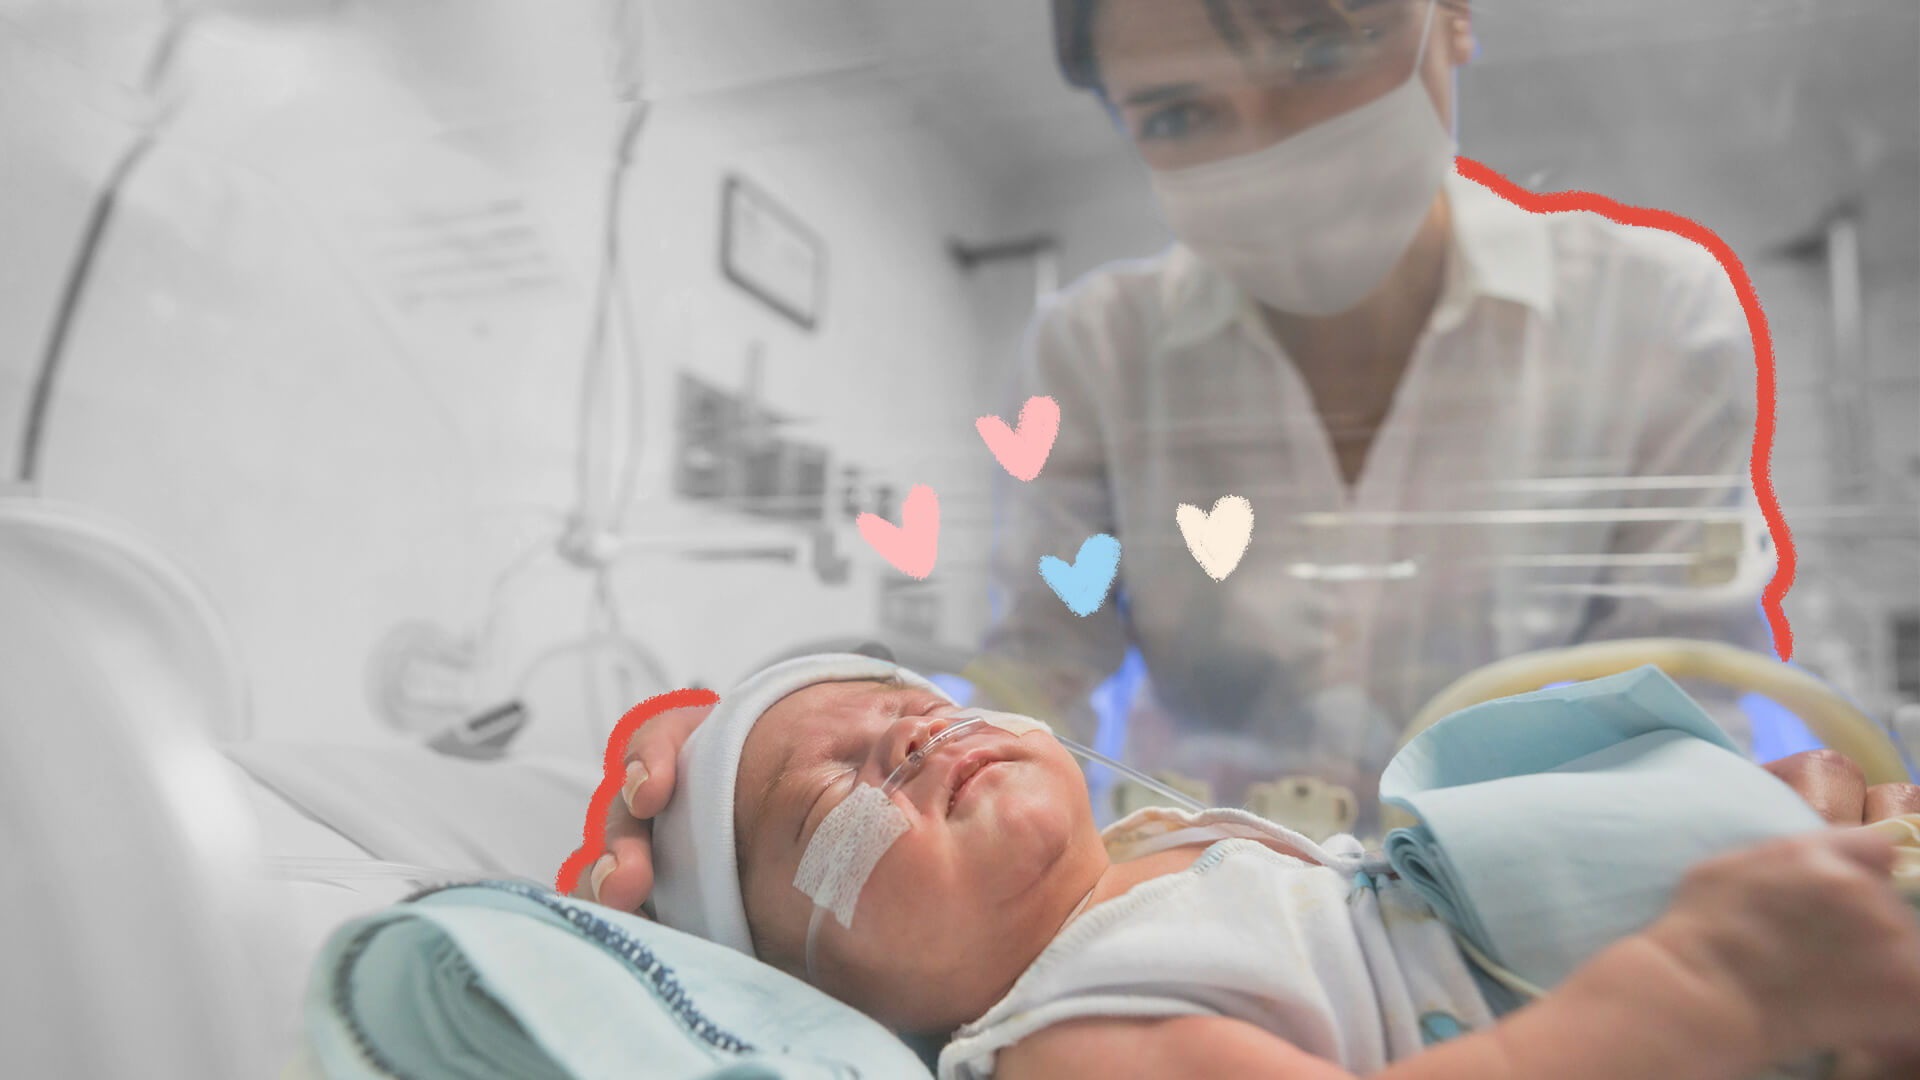 Licença-maternidade estendida: Na imagem, um bebê prematuro está dentro de uma incubadora. A imagem possui intervenções de rabiscos coloridos.